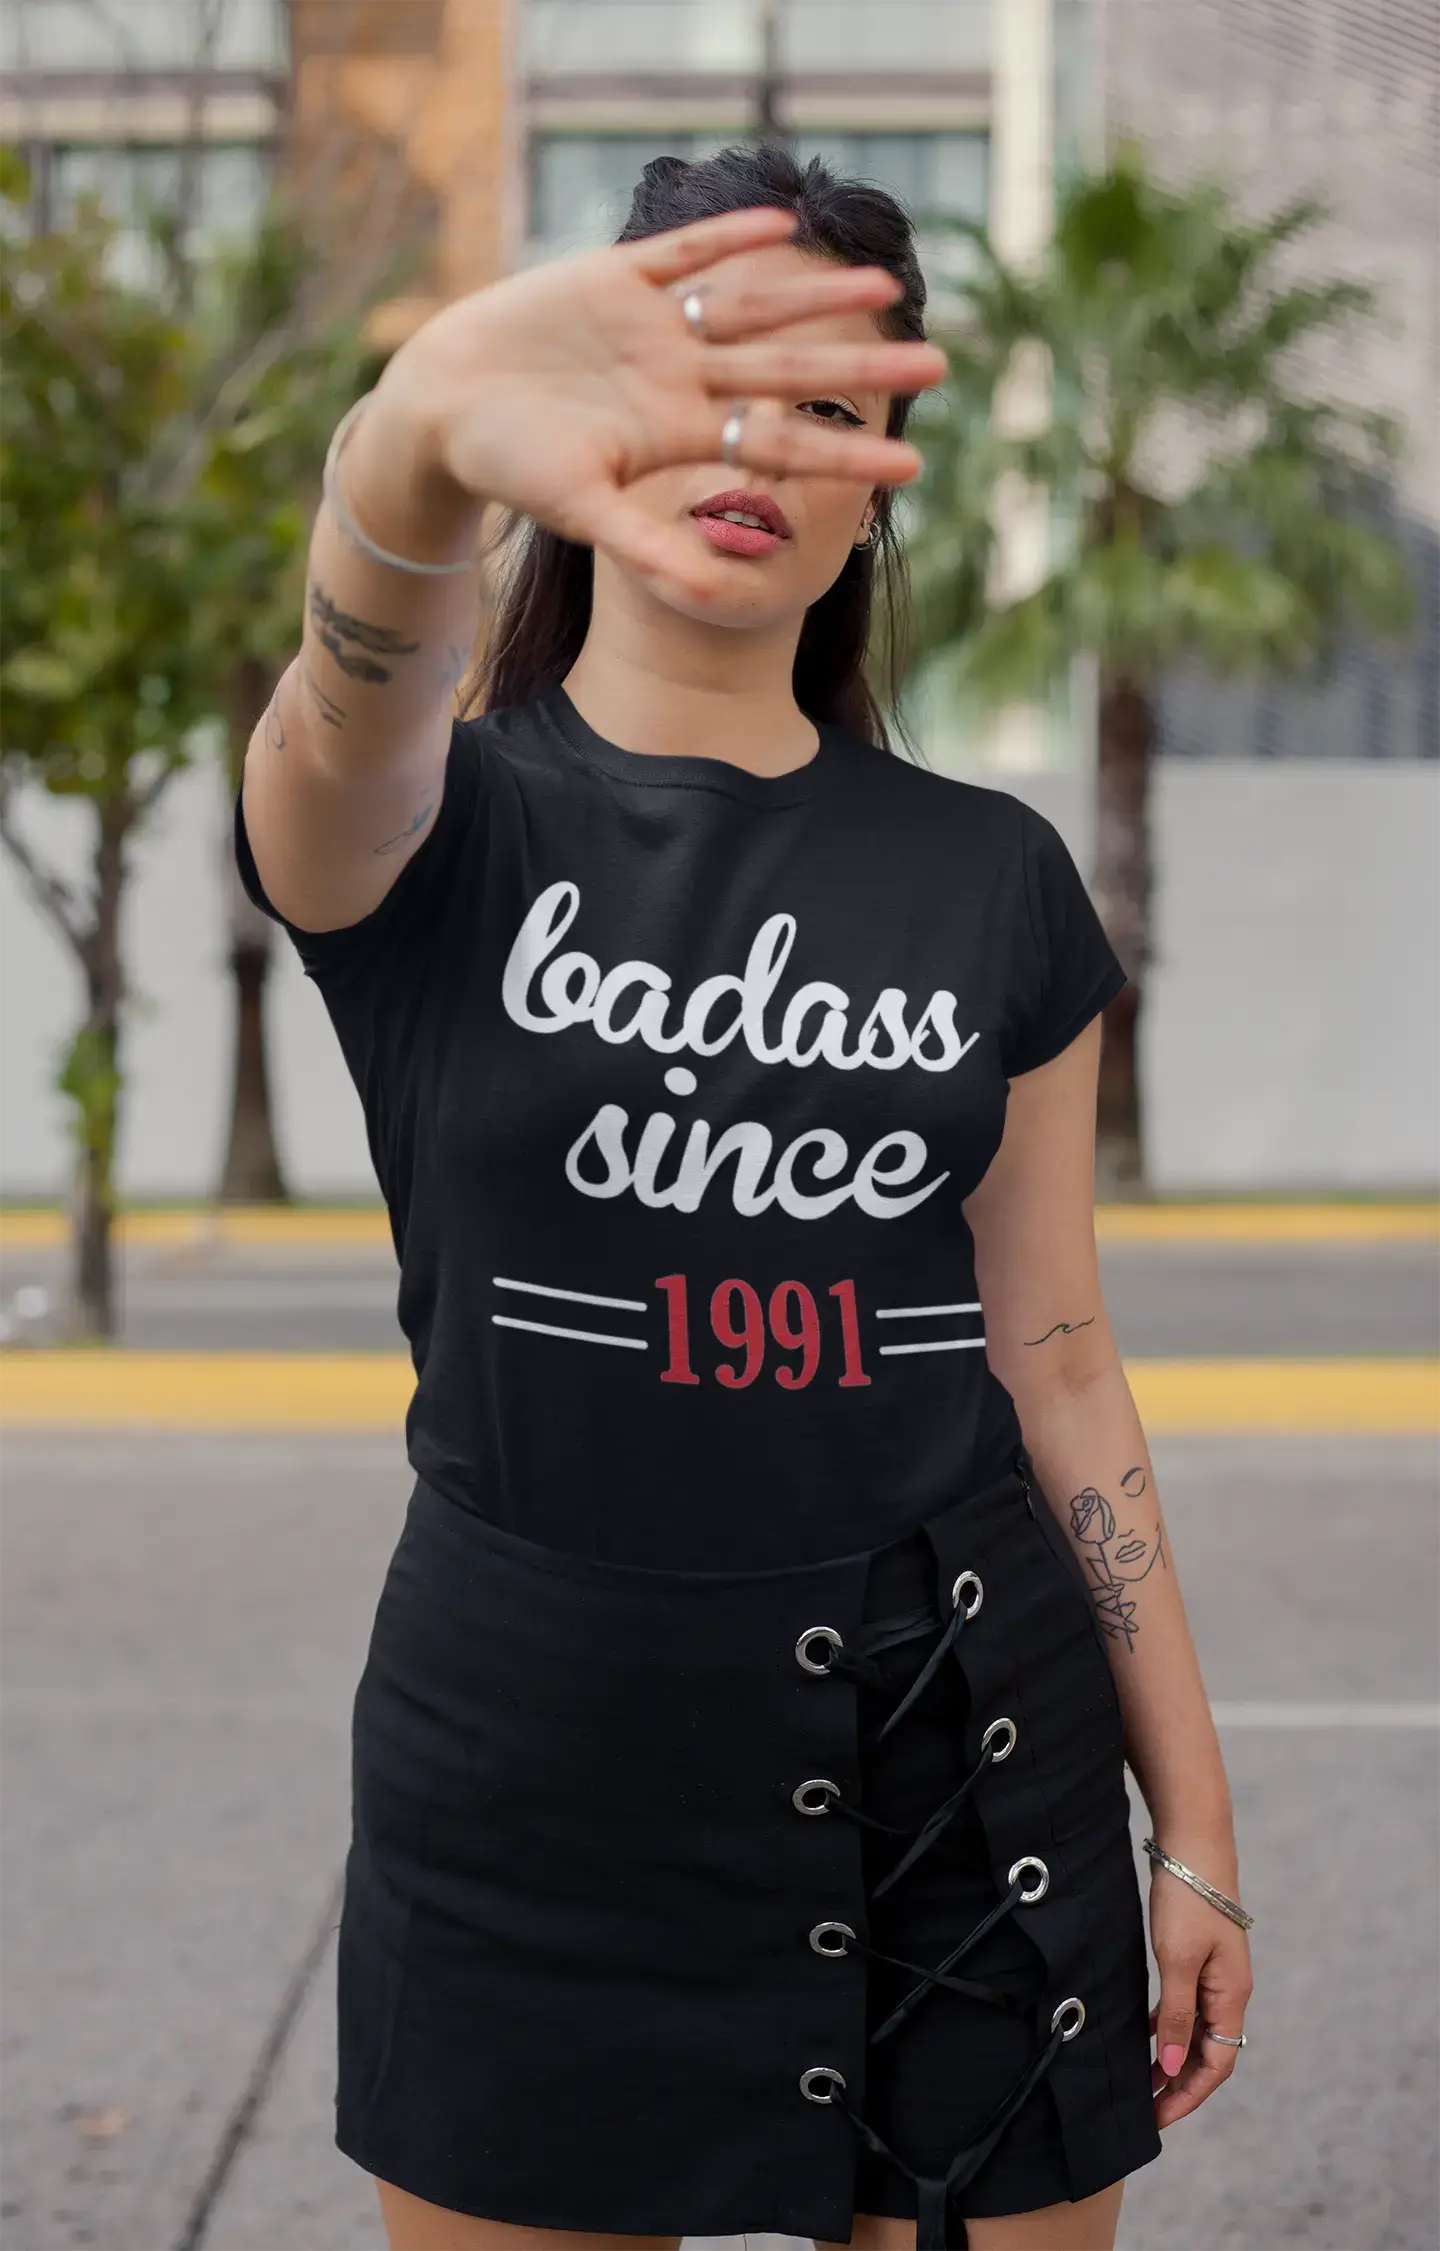 Badass Since 1991 Women's T-shirt Black Birthday Gift Round Neck 00432